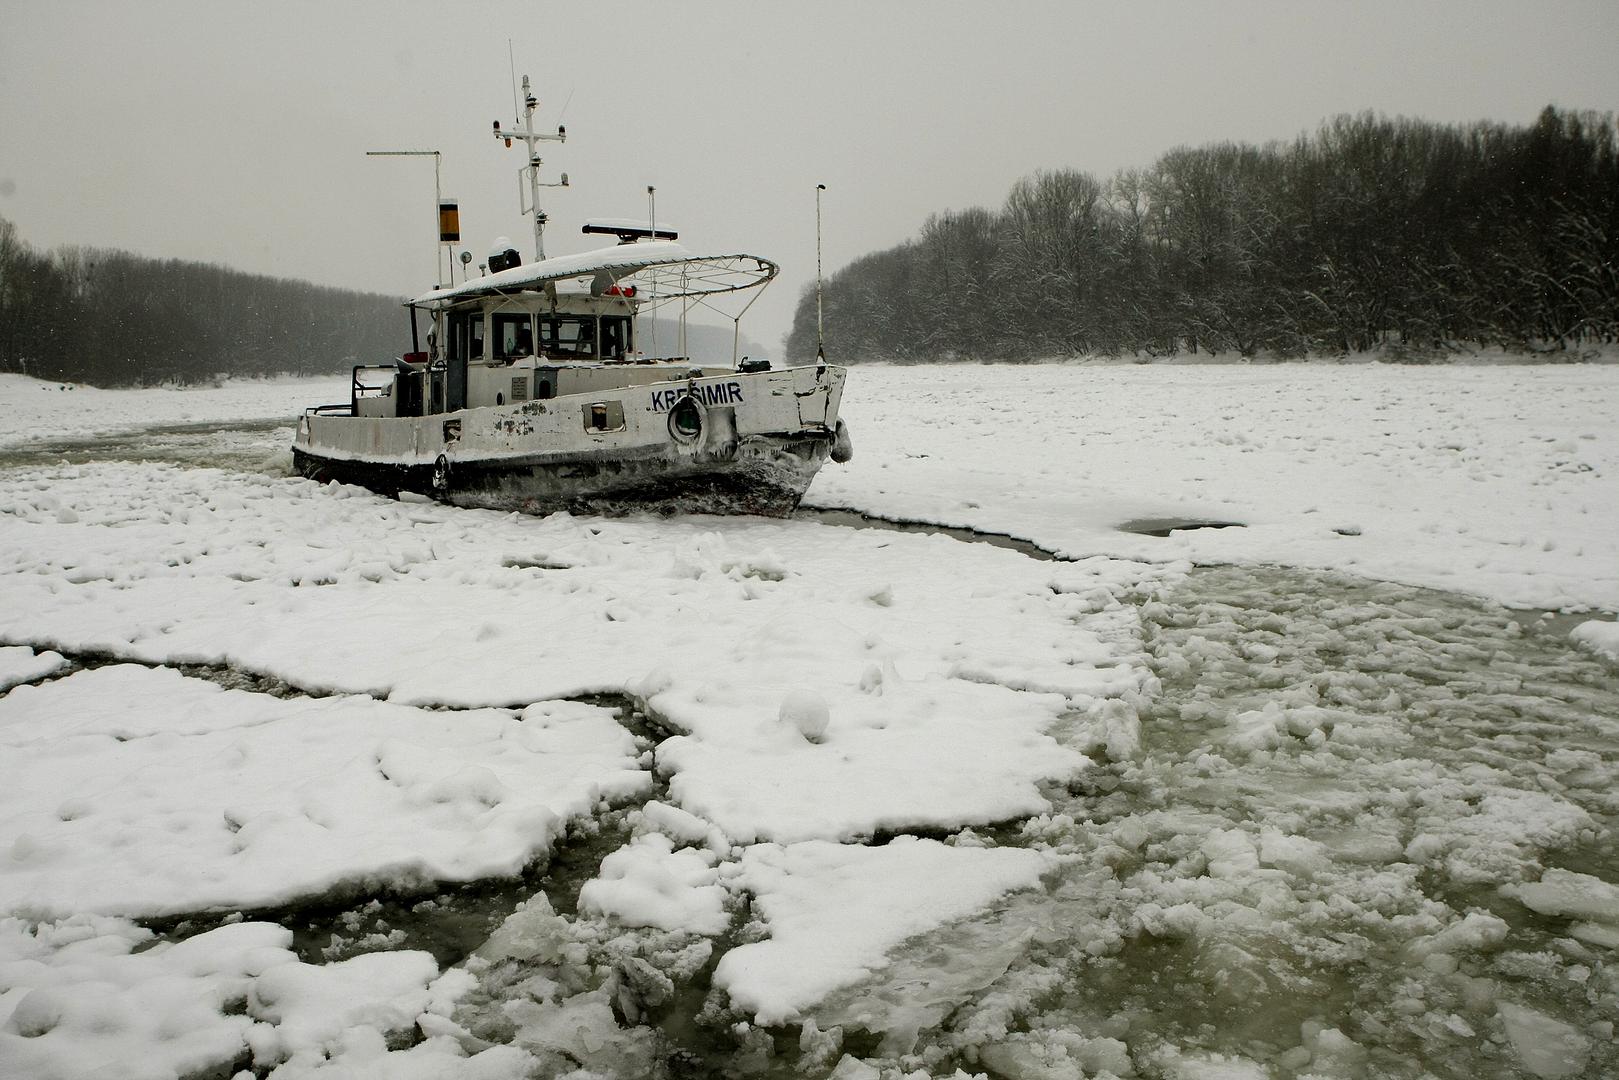 Žurili su se tada očistiti Dravu dok Dunav ne postane okovan kako se stvari ne bi zakomplicirale. Nekoliko dana kasnije, na Dunav su prvi put nakon 35 godina stigli i mađarski ledolomci koji su probijali led. 